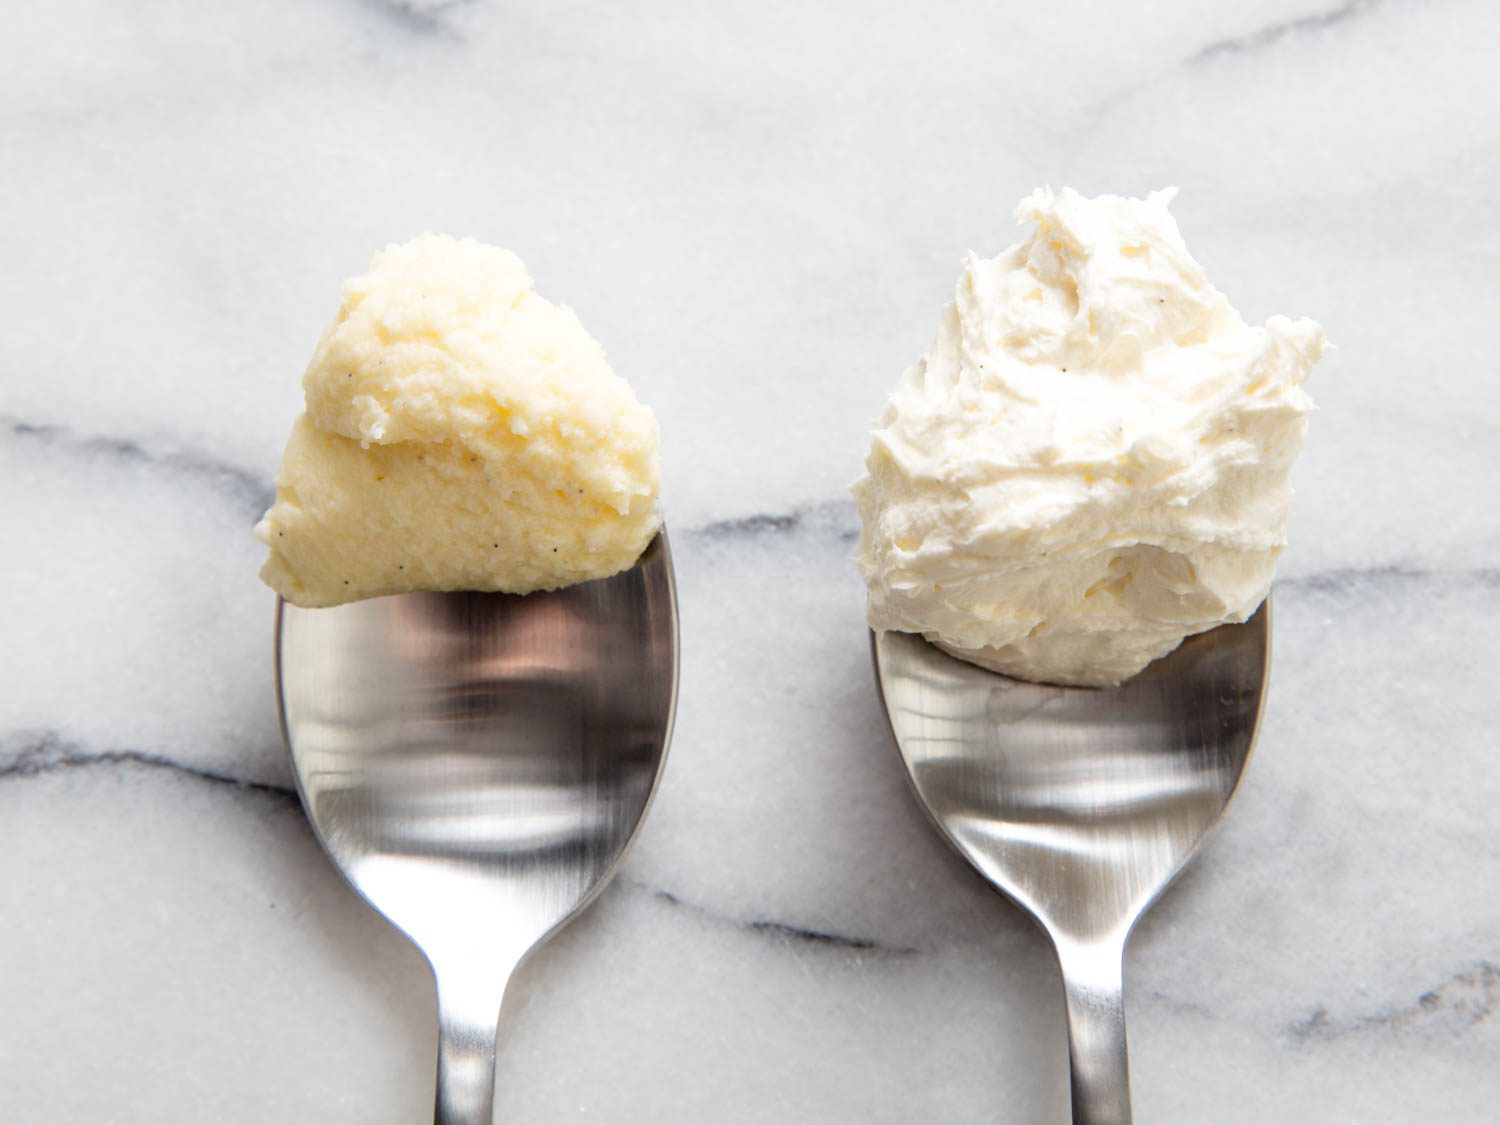 一勺密集、冷奶油乳酪(左)最终温度为65°F (18°C)和一勺轻奶油乳酪在合适的温度(右)最终温度为72°F (22°C)。gydF4y2Ba